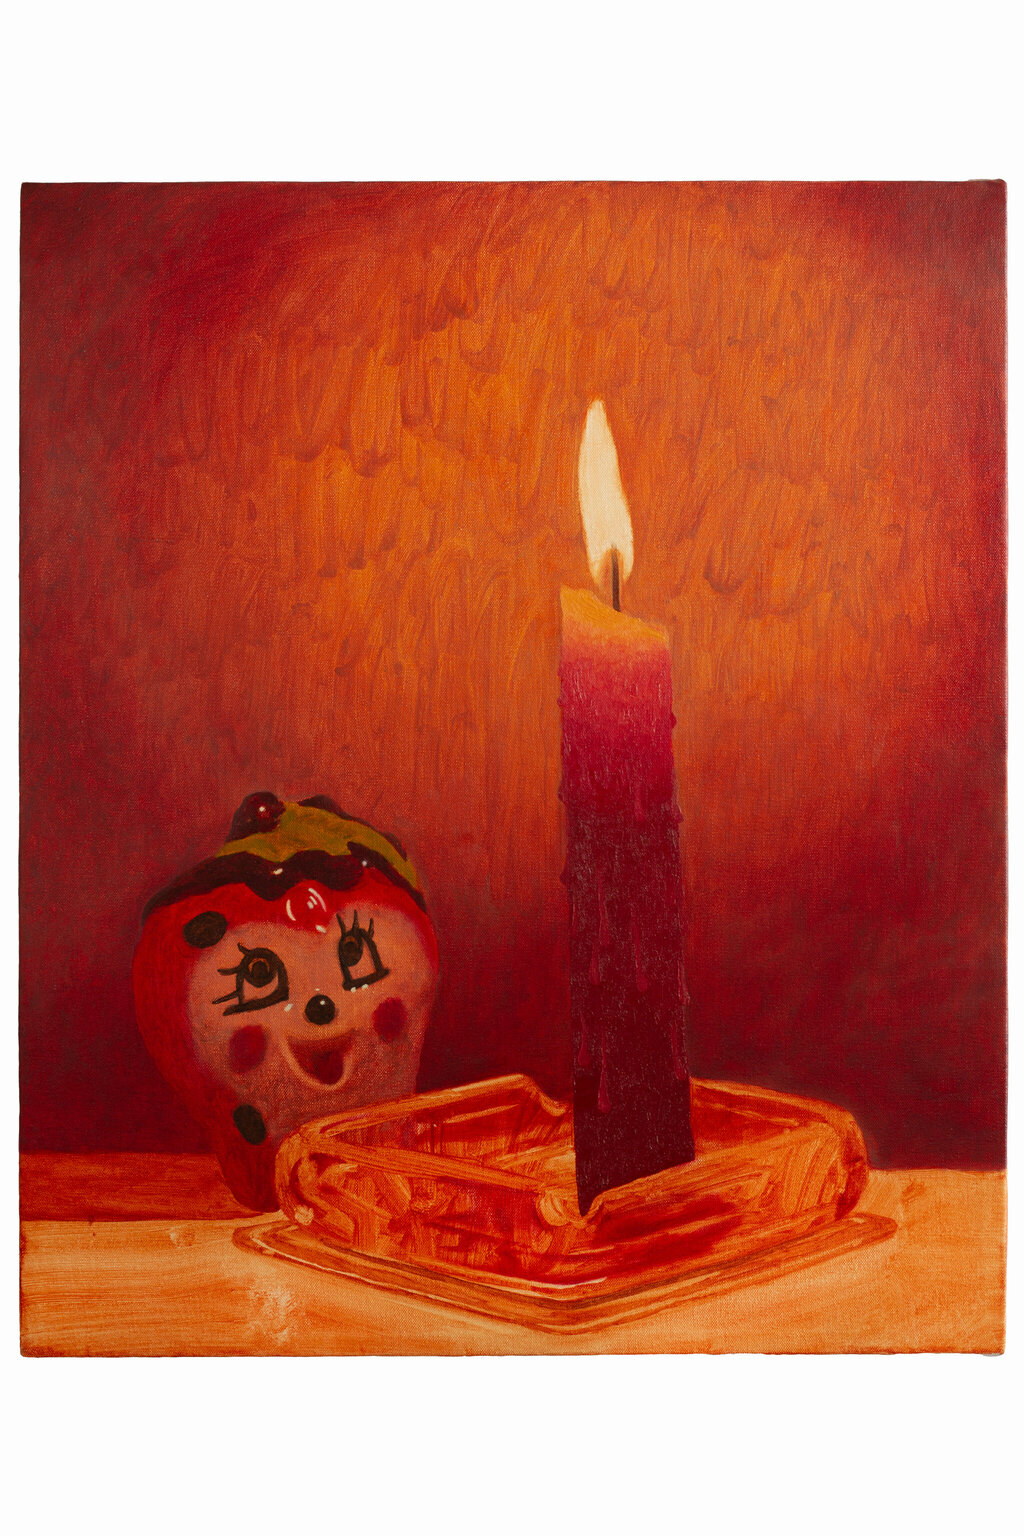 Leonel Salguero salero, 2022 Oil on canvas 60 × 50 cm (23 ⅝ × 19 ⅝ inches)